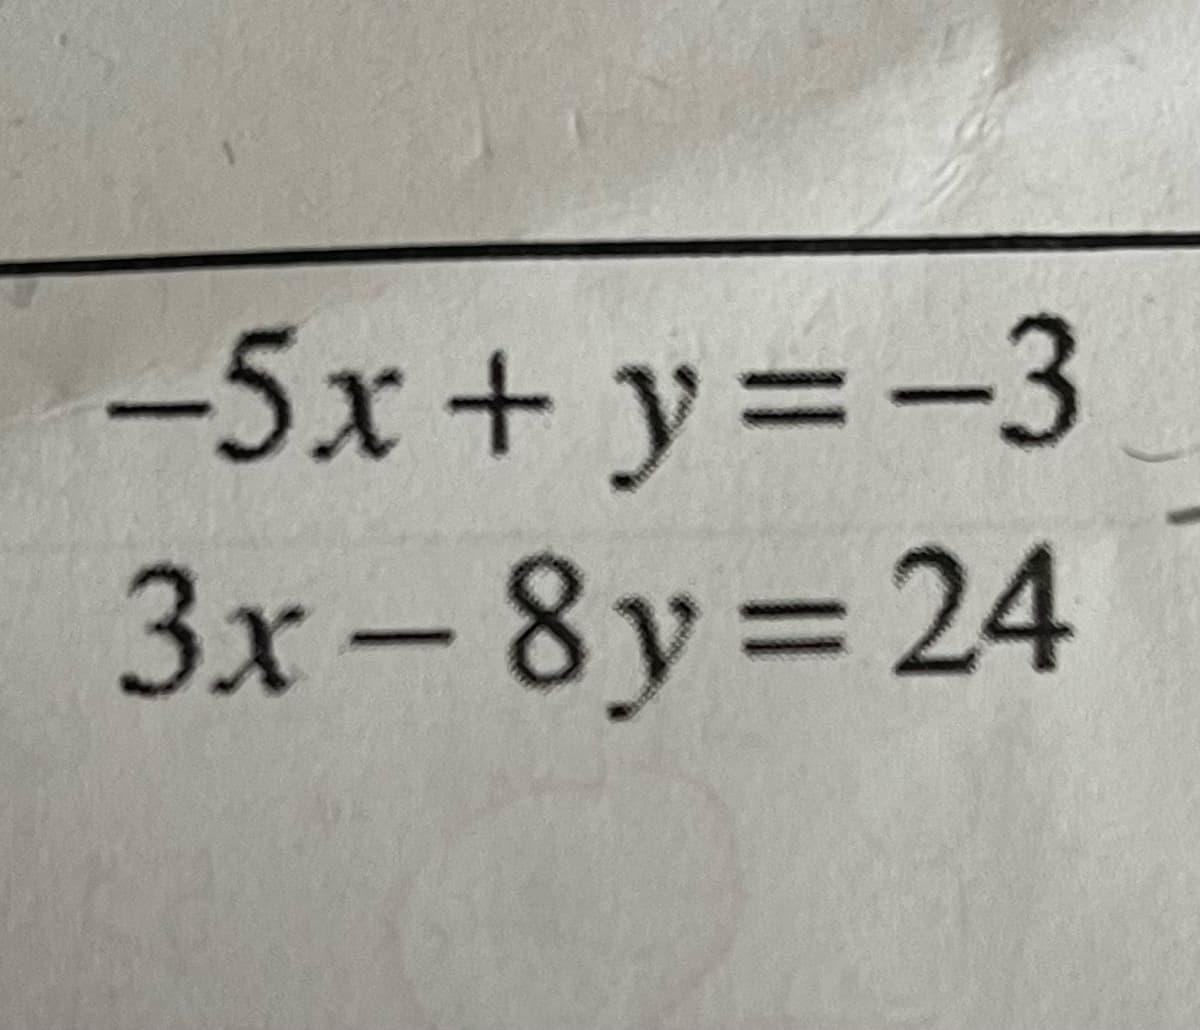 -5x+ y=-3
3x-8y=24
